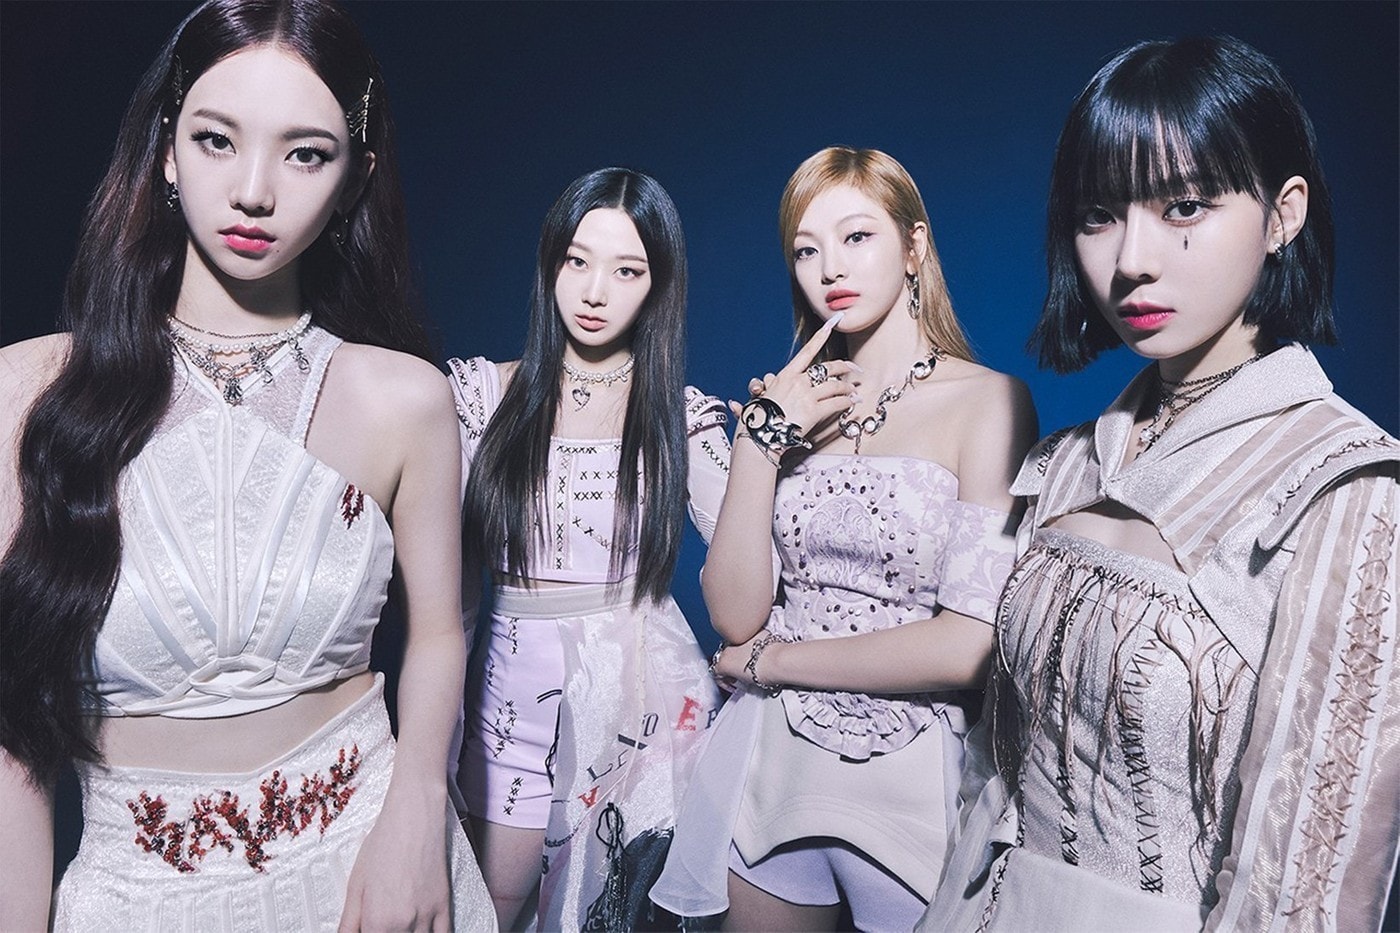 韓國人氣女團 aespa 宣佈將登上 Coachella 音樂節主舞台